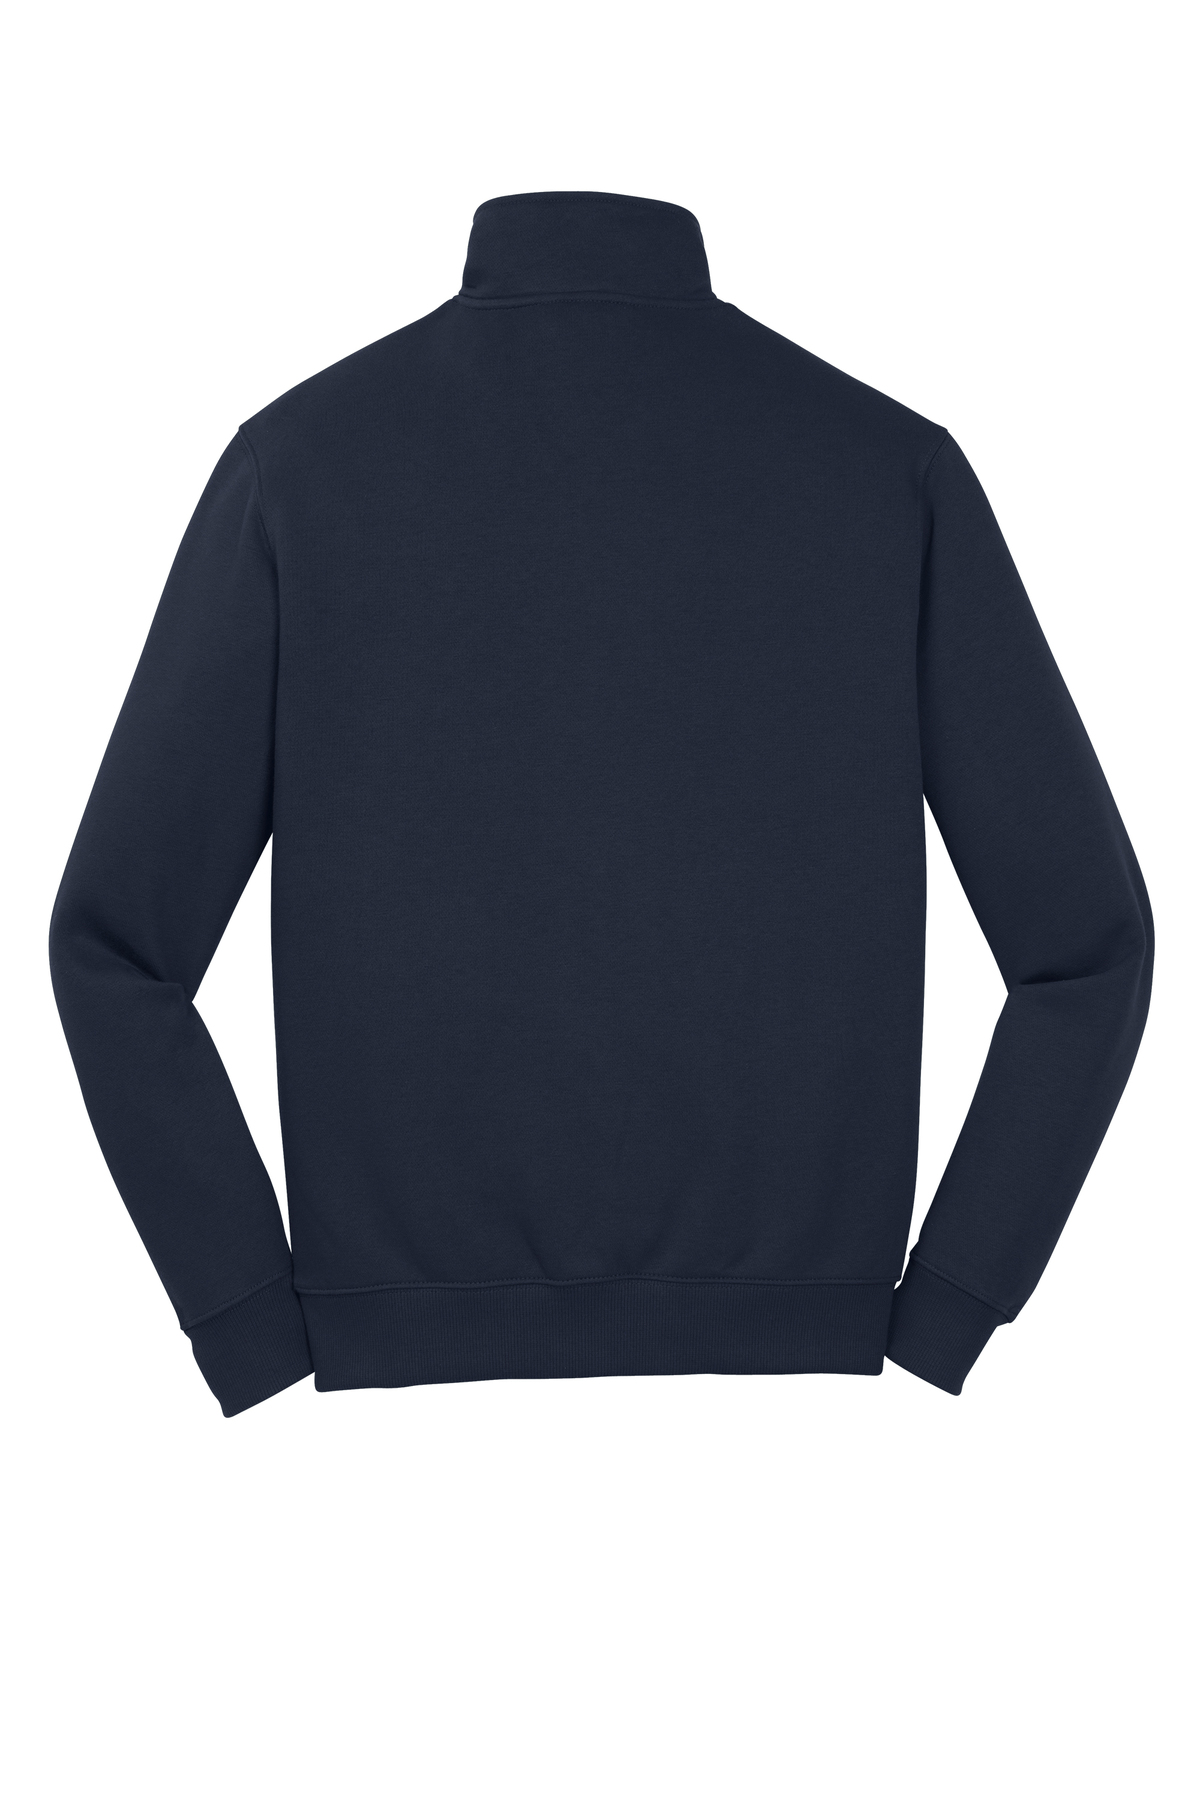 1/2 Zip Sweatshirt - NAVY BLUE / M